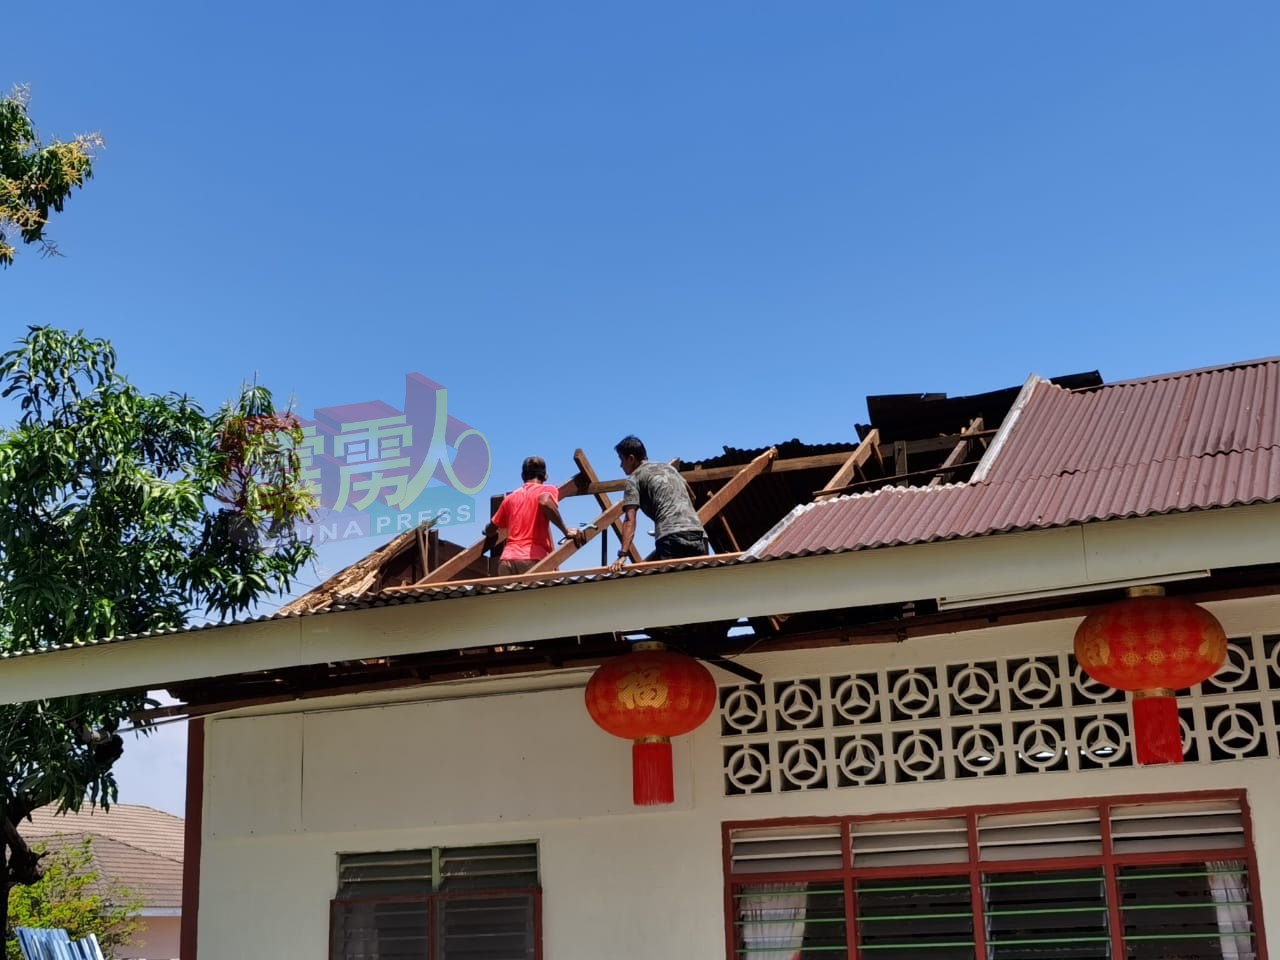 一些工作人员忙于维修被大风吹毁的屋顶。